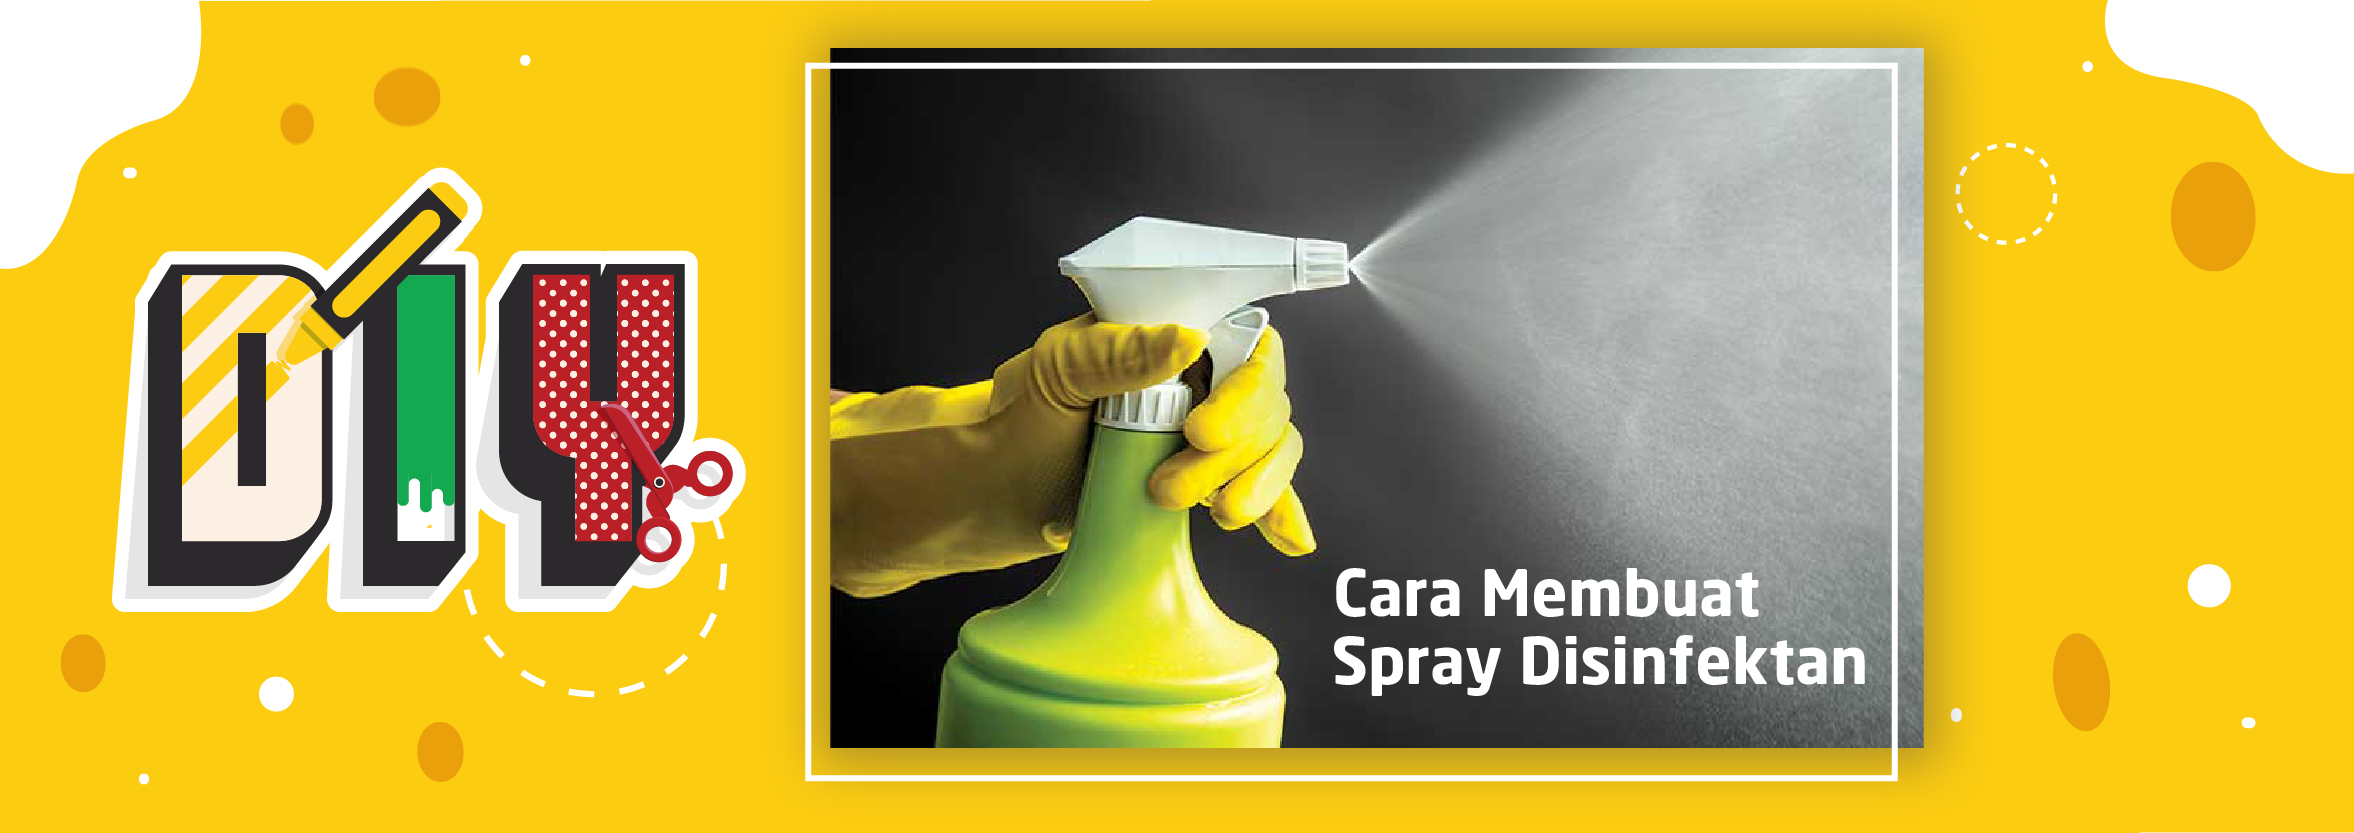 DIY : Cara Membuat Spray Disinfektan